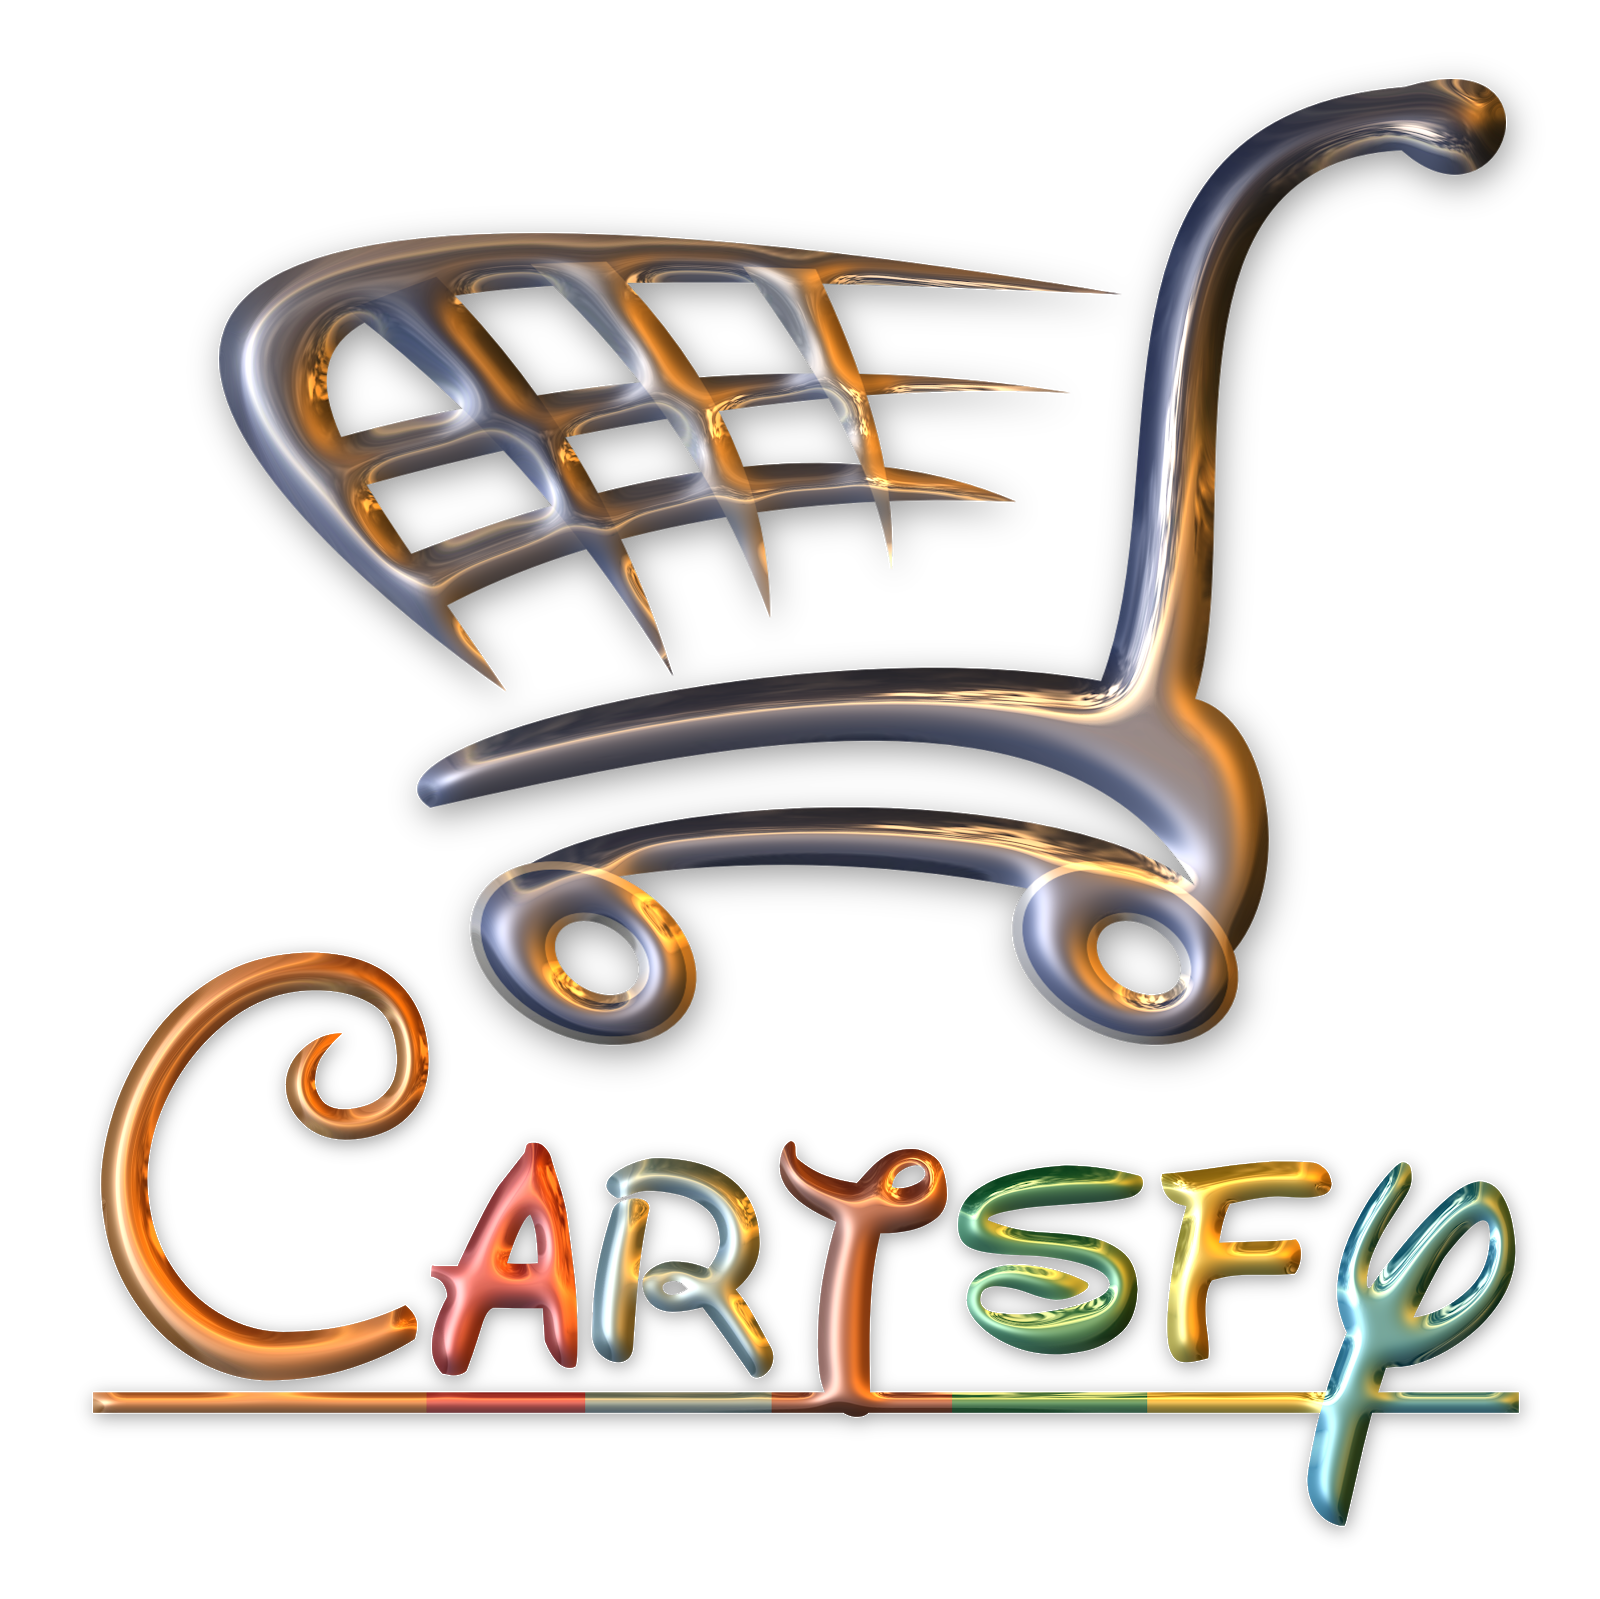 Cartsfy.com